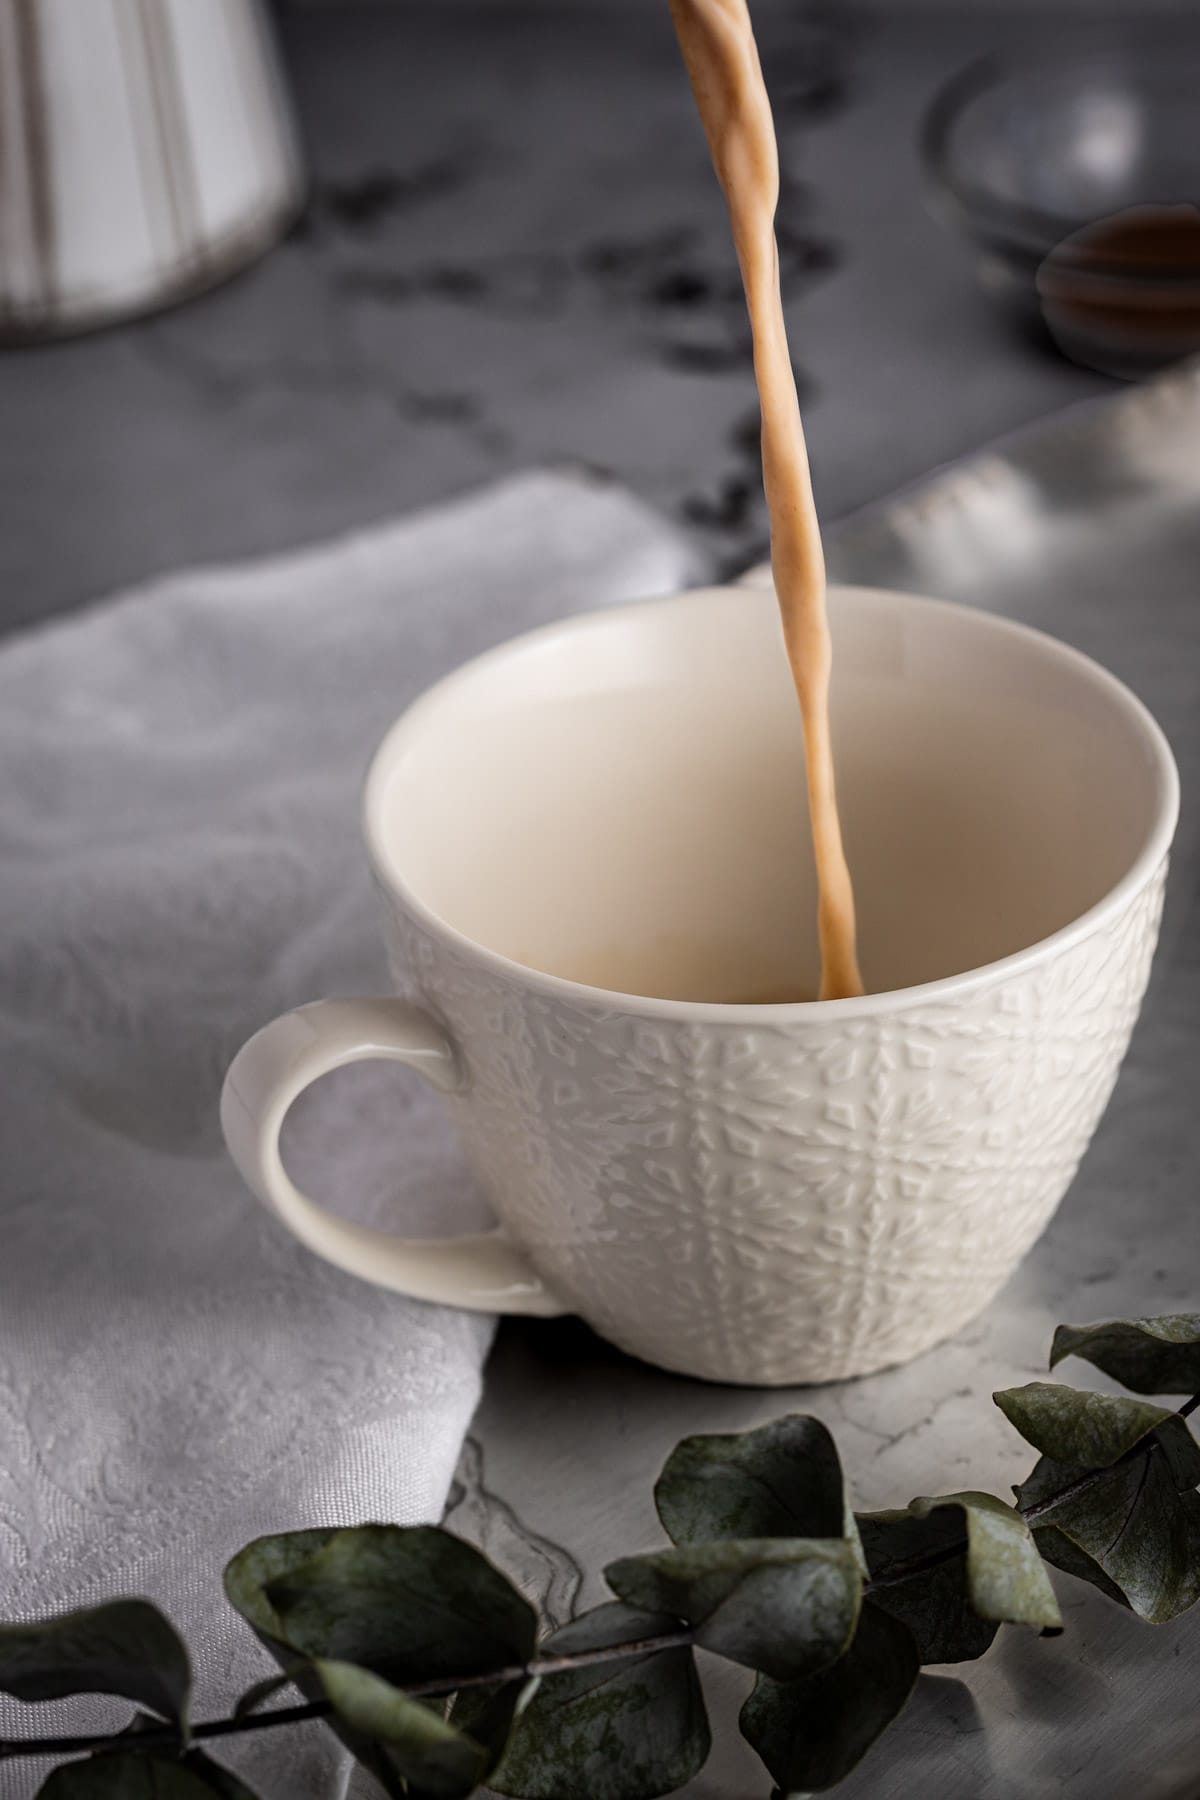 Oat milk latte being poured into a white coffee mug, next to a white linen napkin.